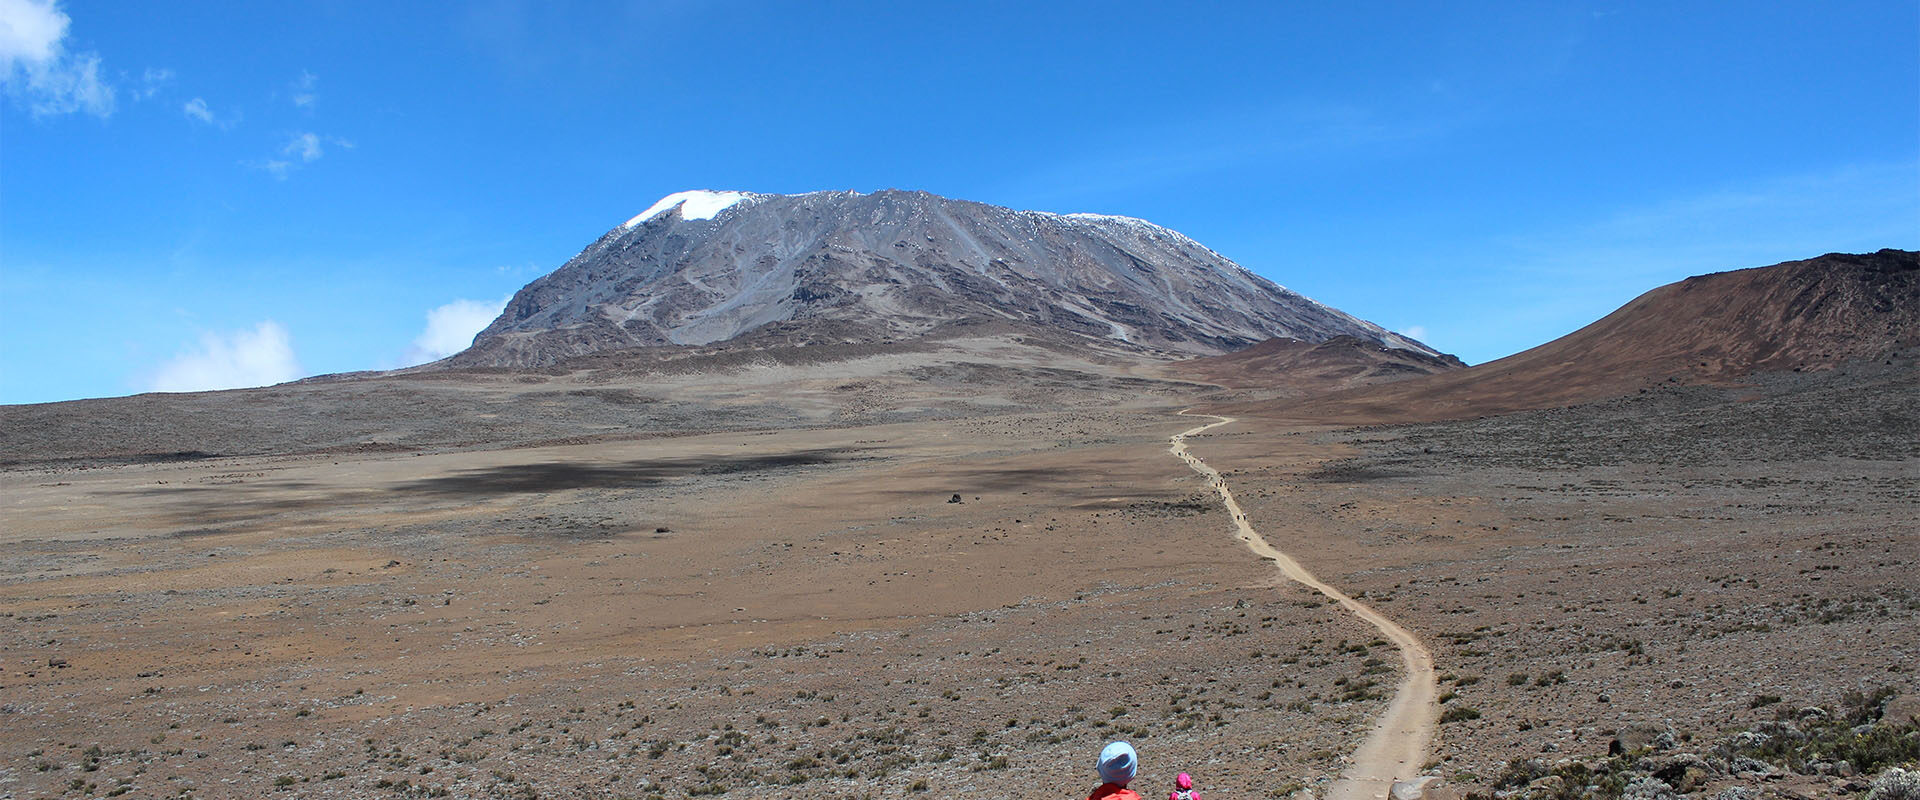 Beklimming van de Kilimanjaro via de Marangu Route